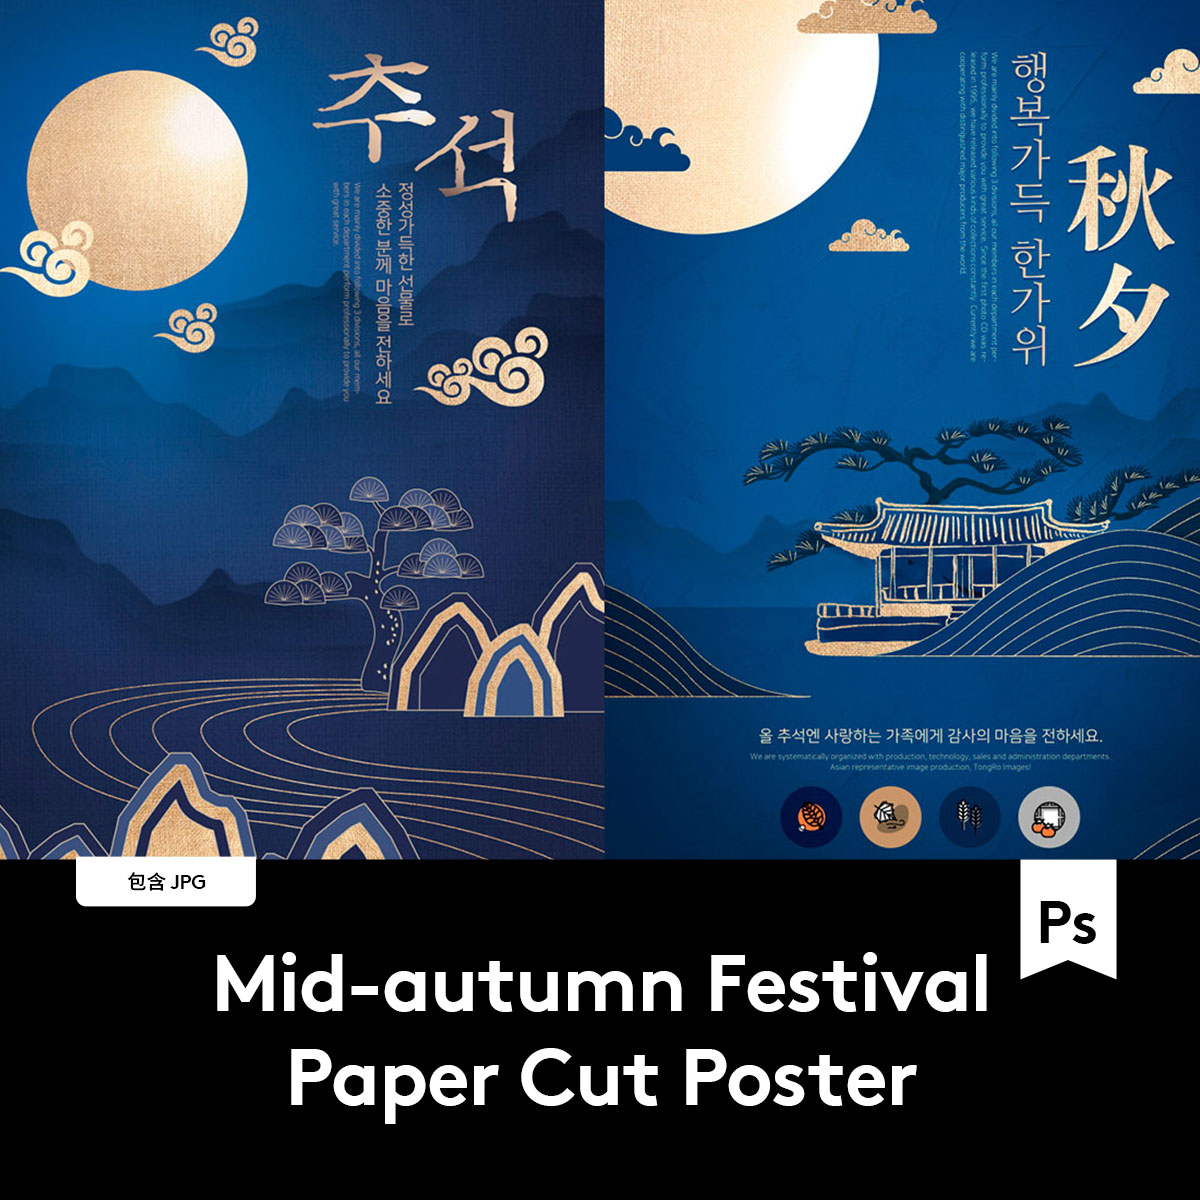 烫金效果中式中国风元素剪纸剪影风格中秋节海报设计PSD模板素材